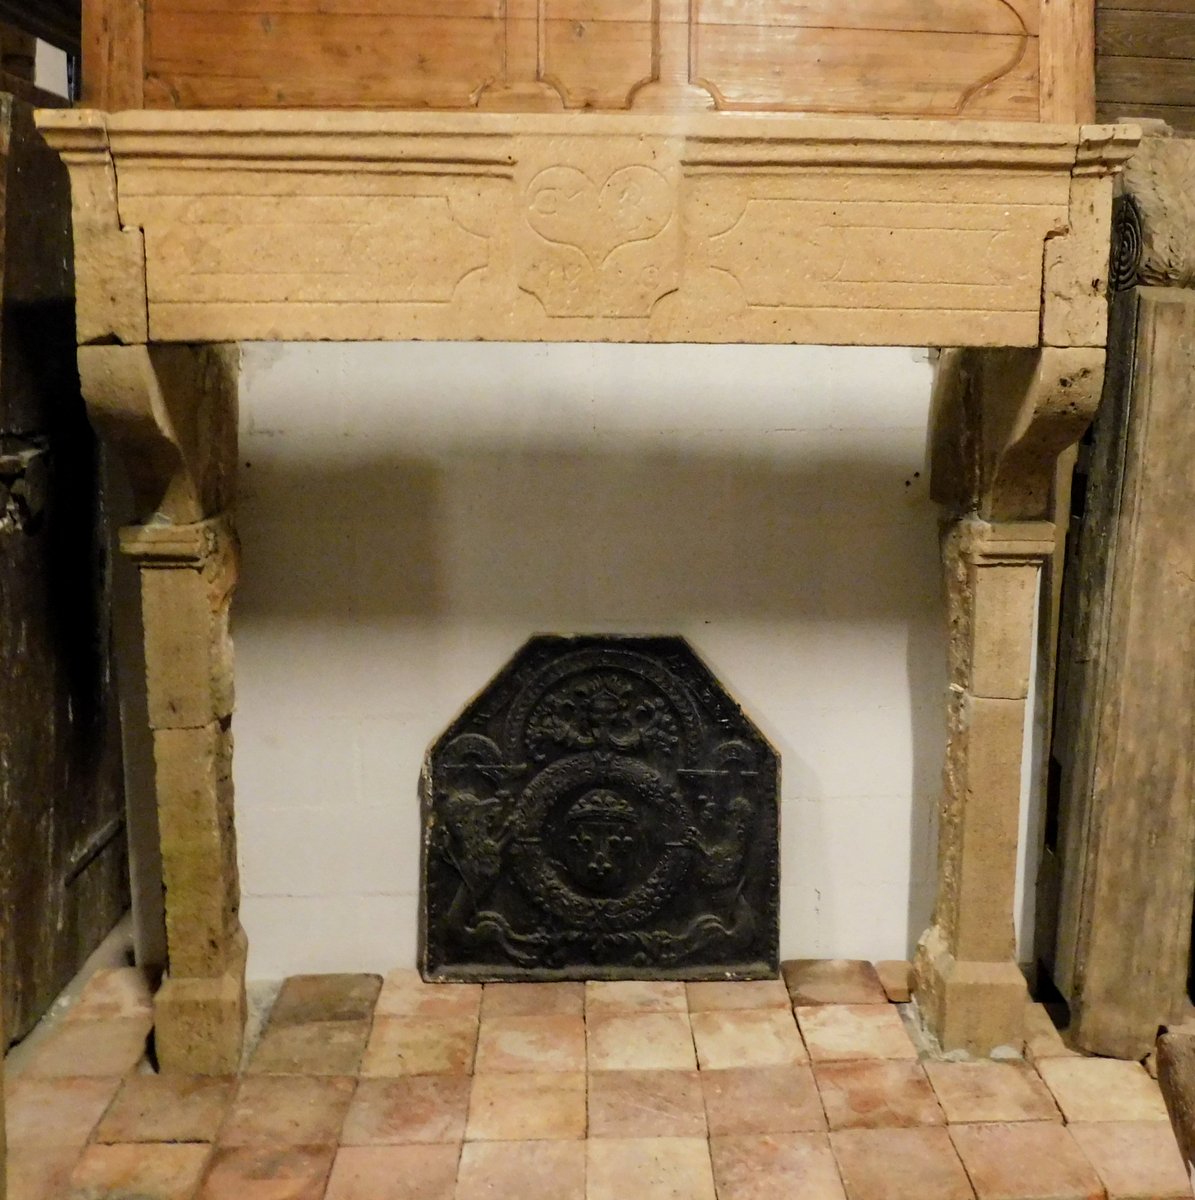 chp289 Borgogna stone fireplace, meas w 173 x h 175 cm 